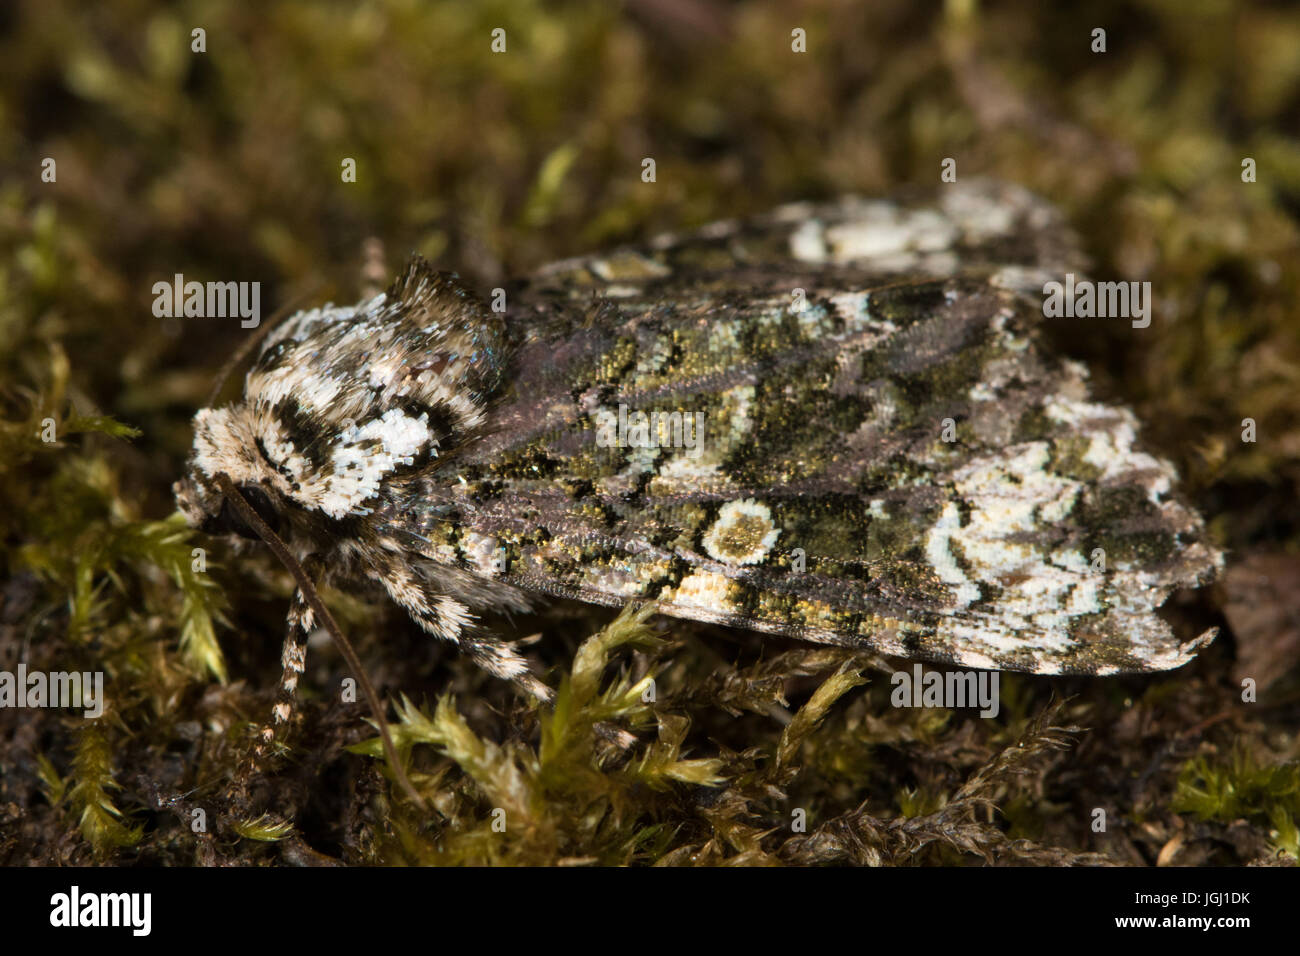 Coronet (Craniophora ligustri) moth Stock Photo